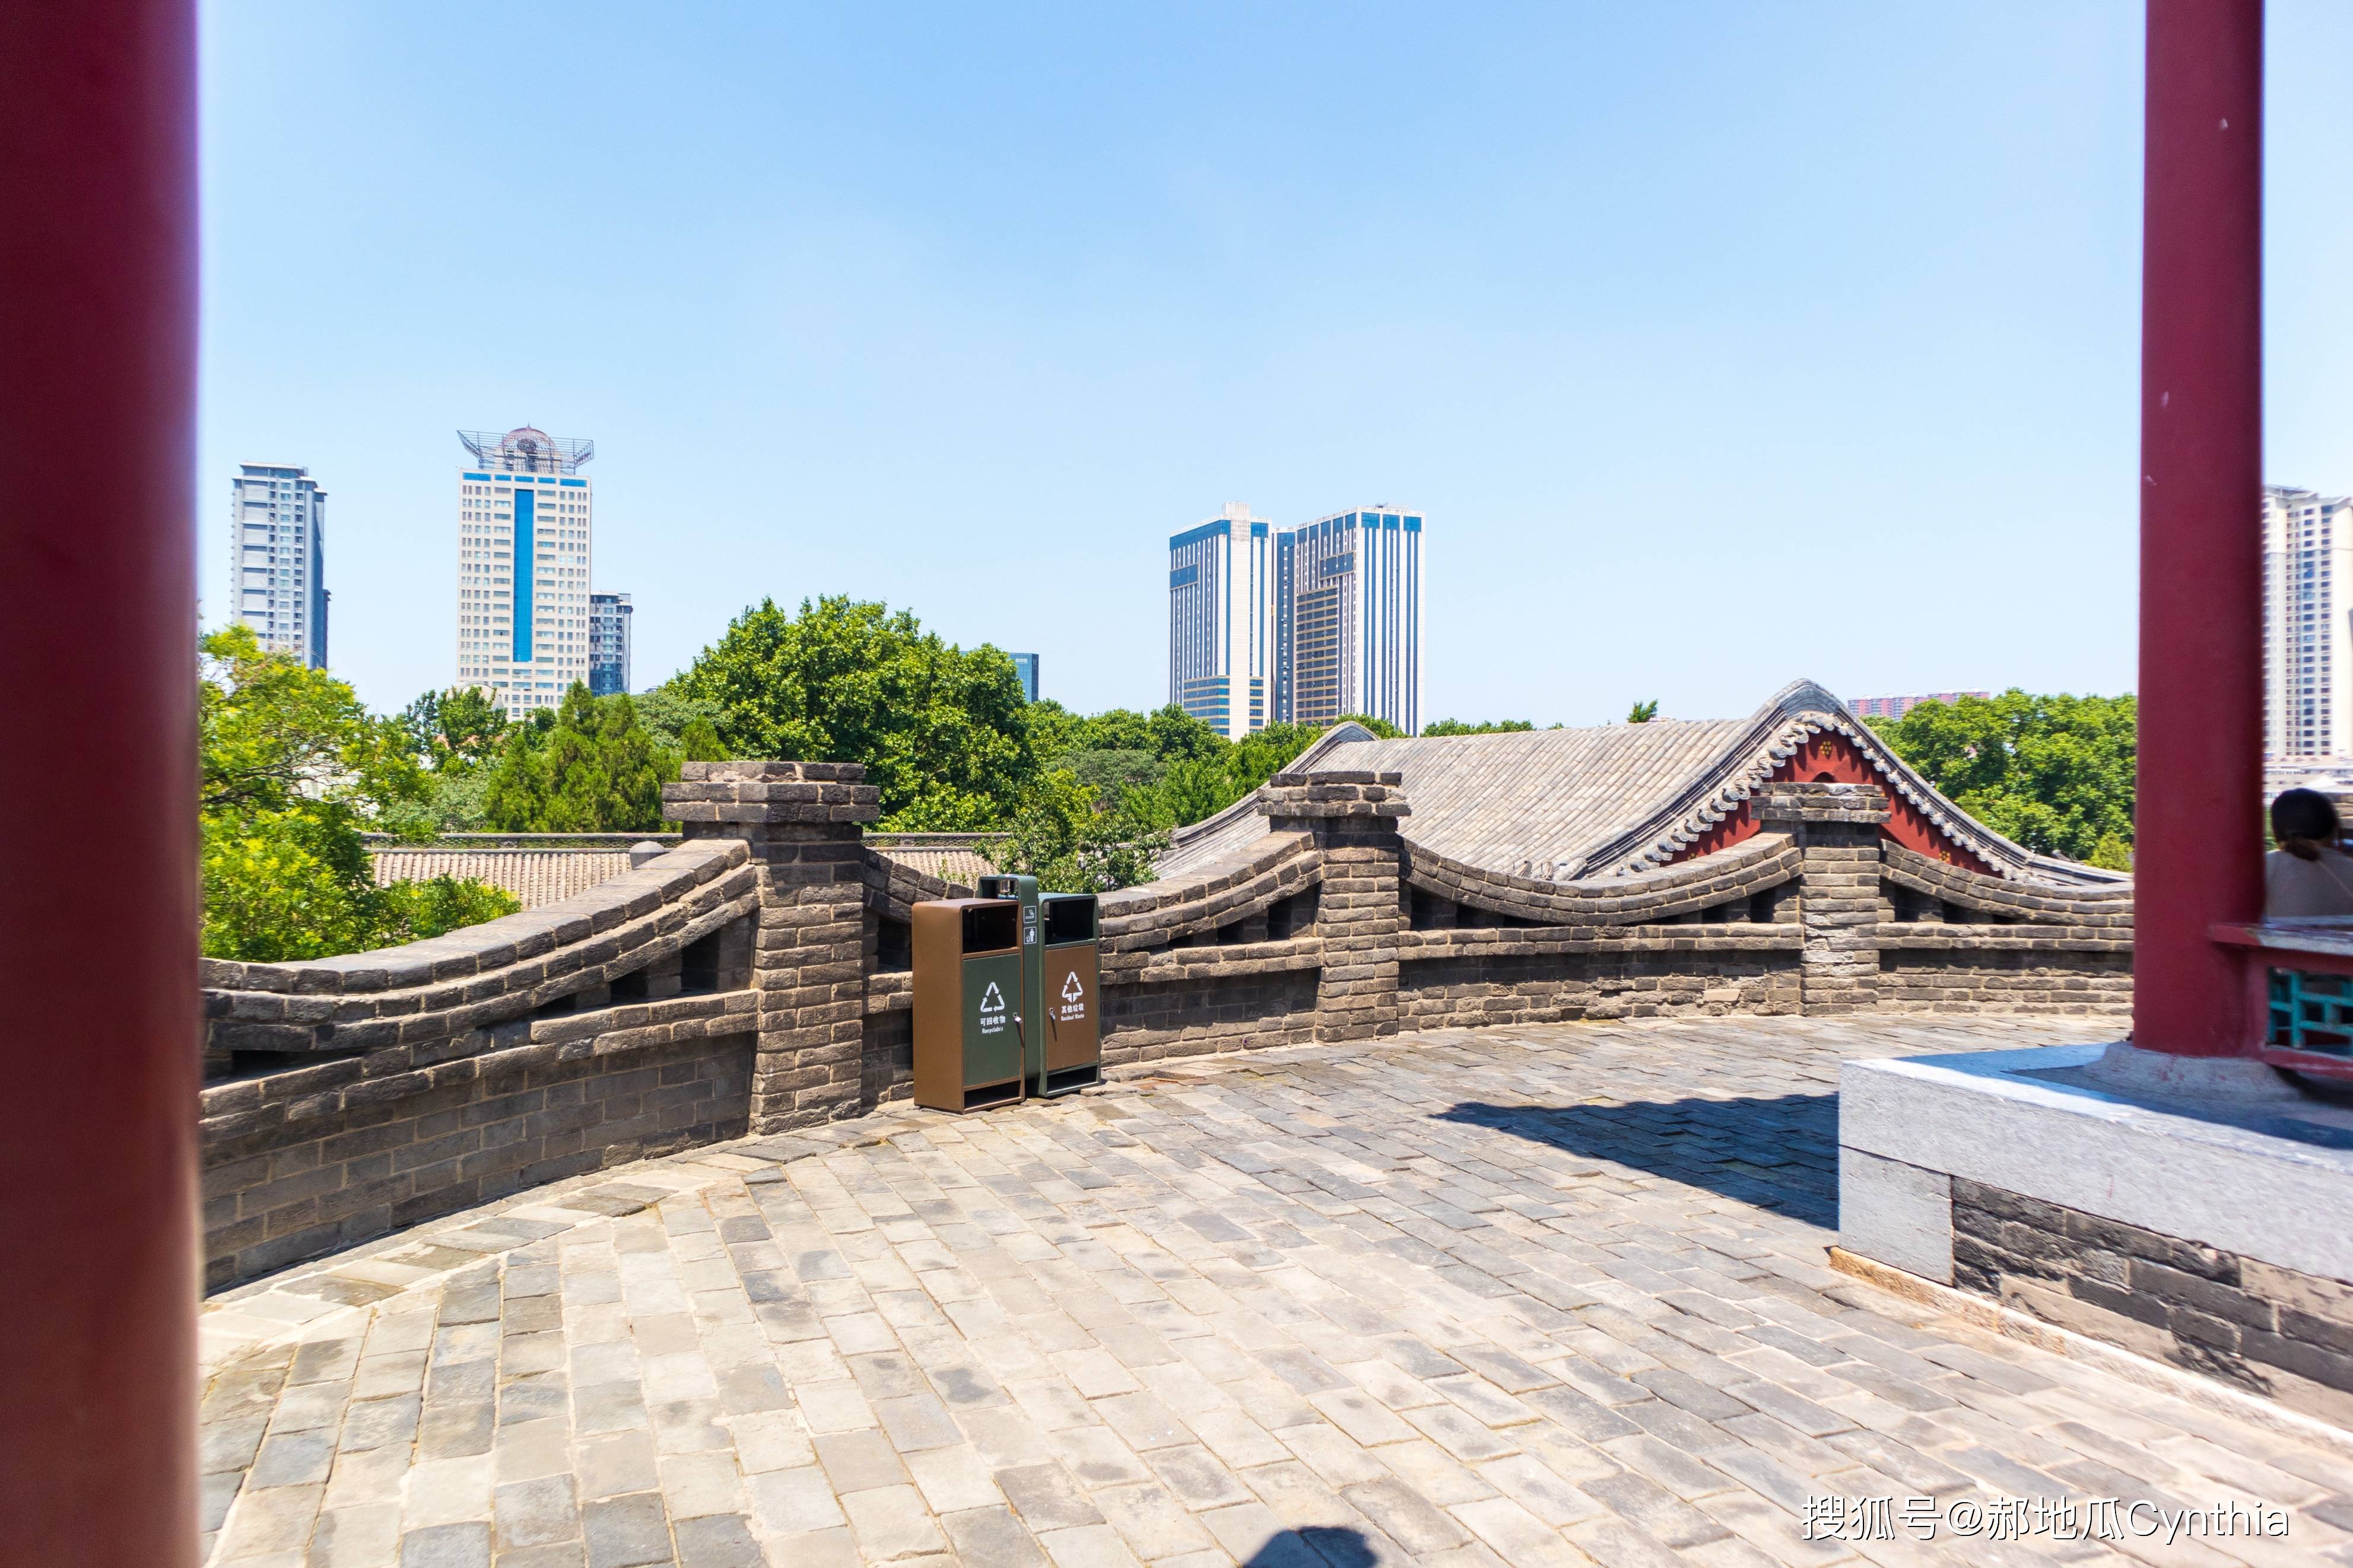 邯郸建设最早的历史文化公园,围绕武灵丛台开辟的一座公园